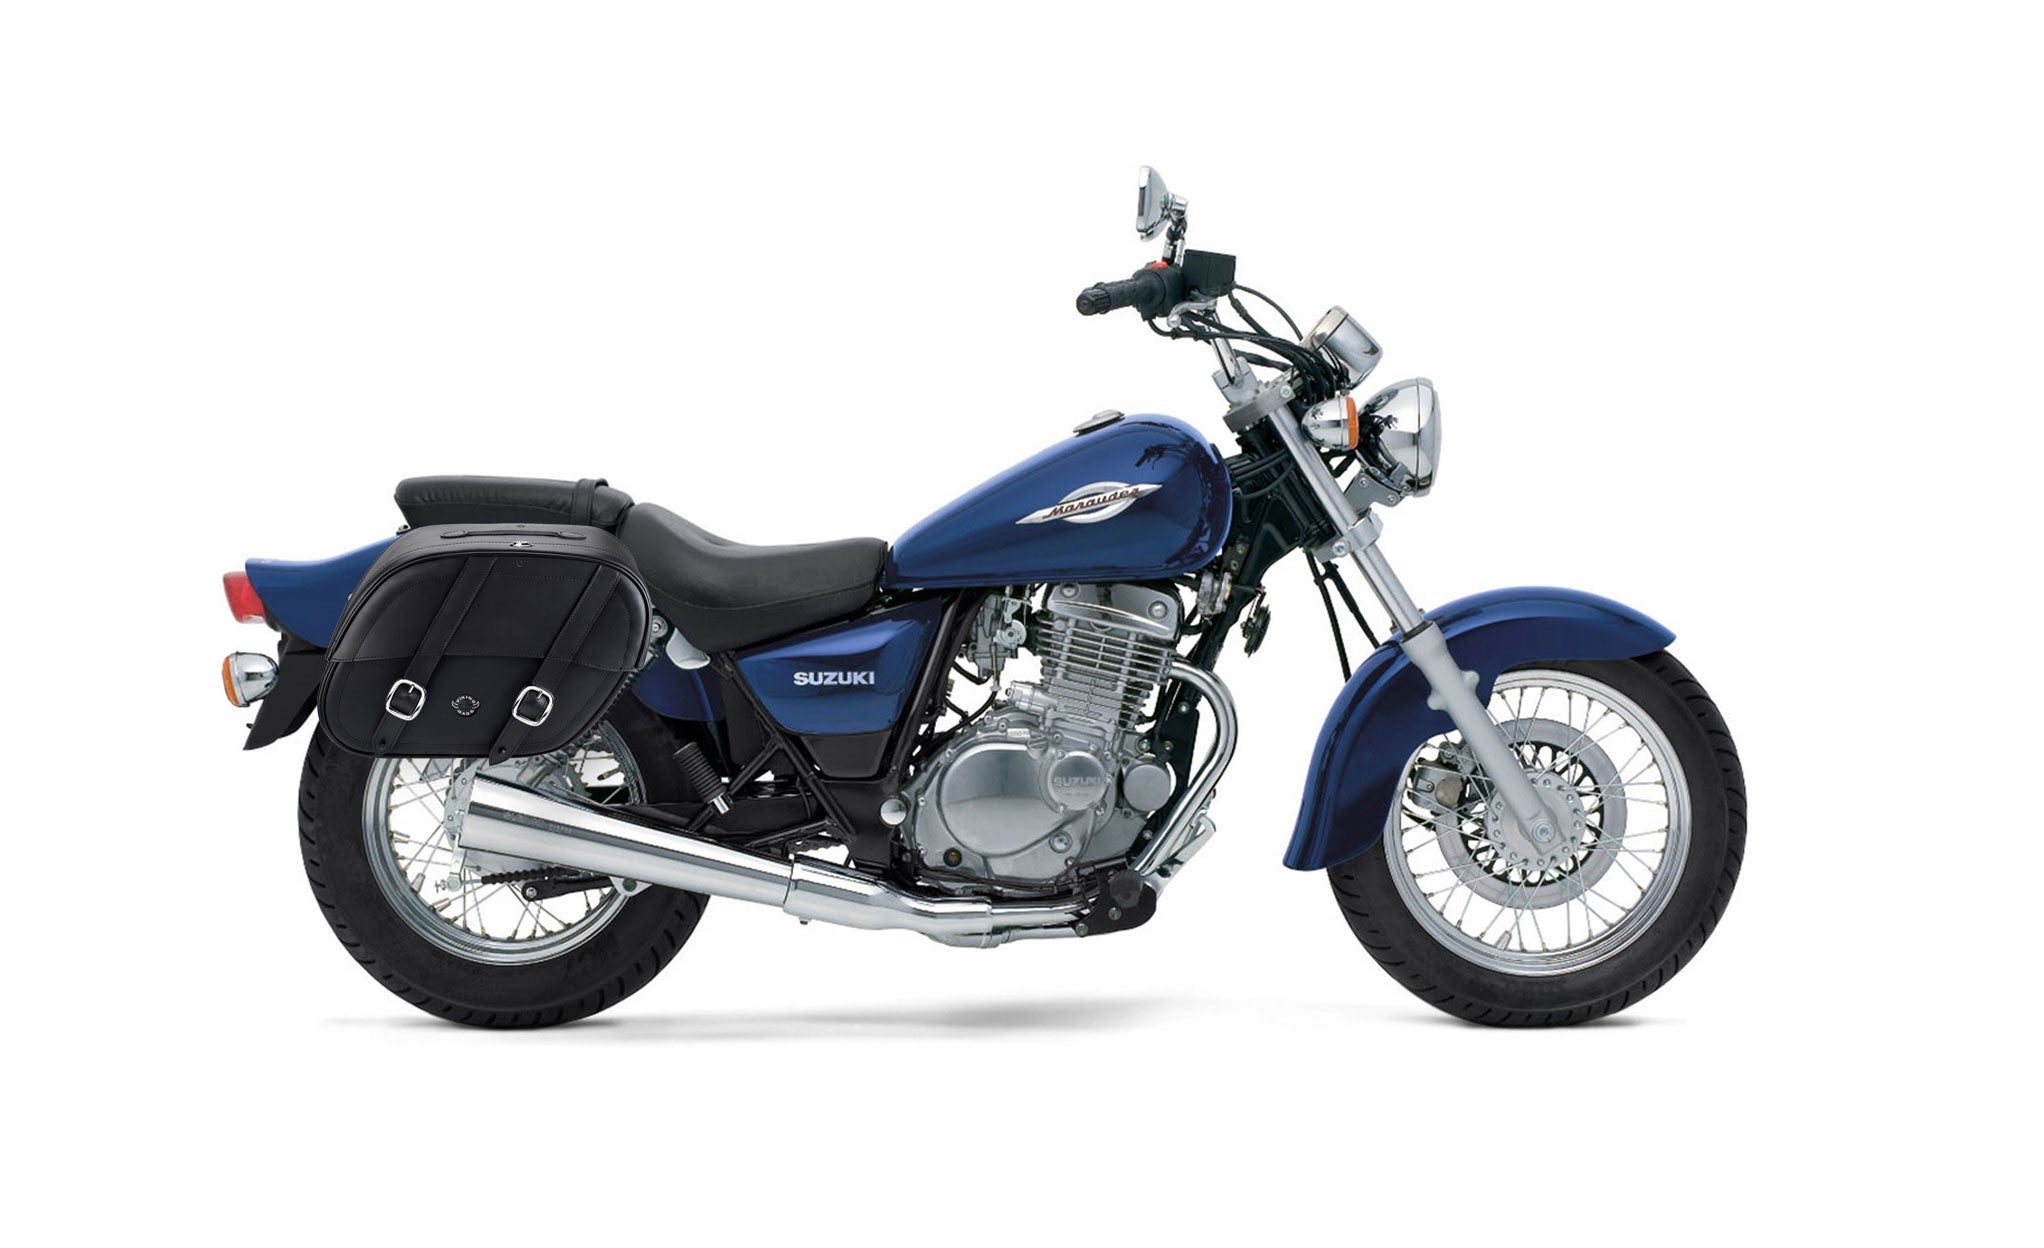 Viking Club Large Suzuki Marauder Gz250 Shock Cut Out Leather Motorcycle Saddlebags on Bike Photo @expand